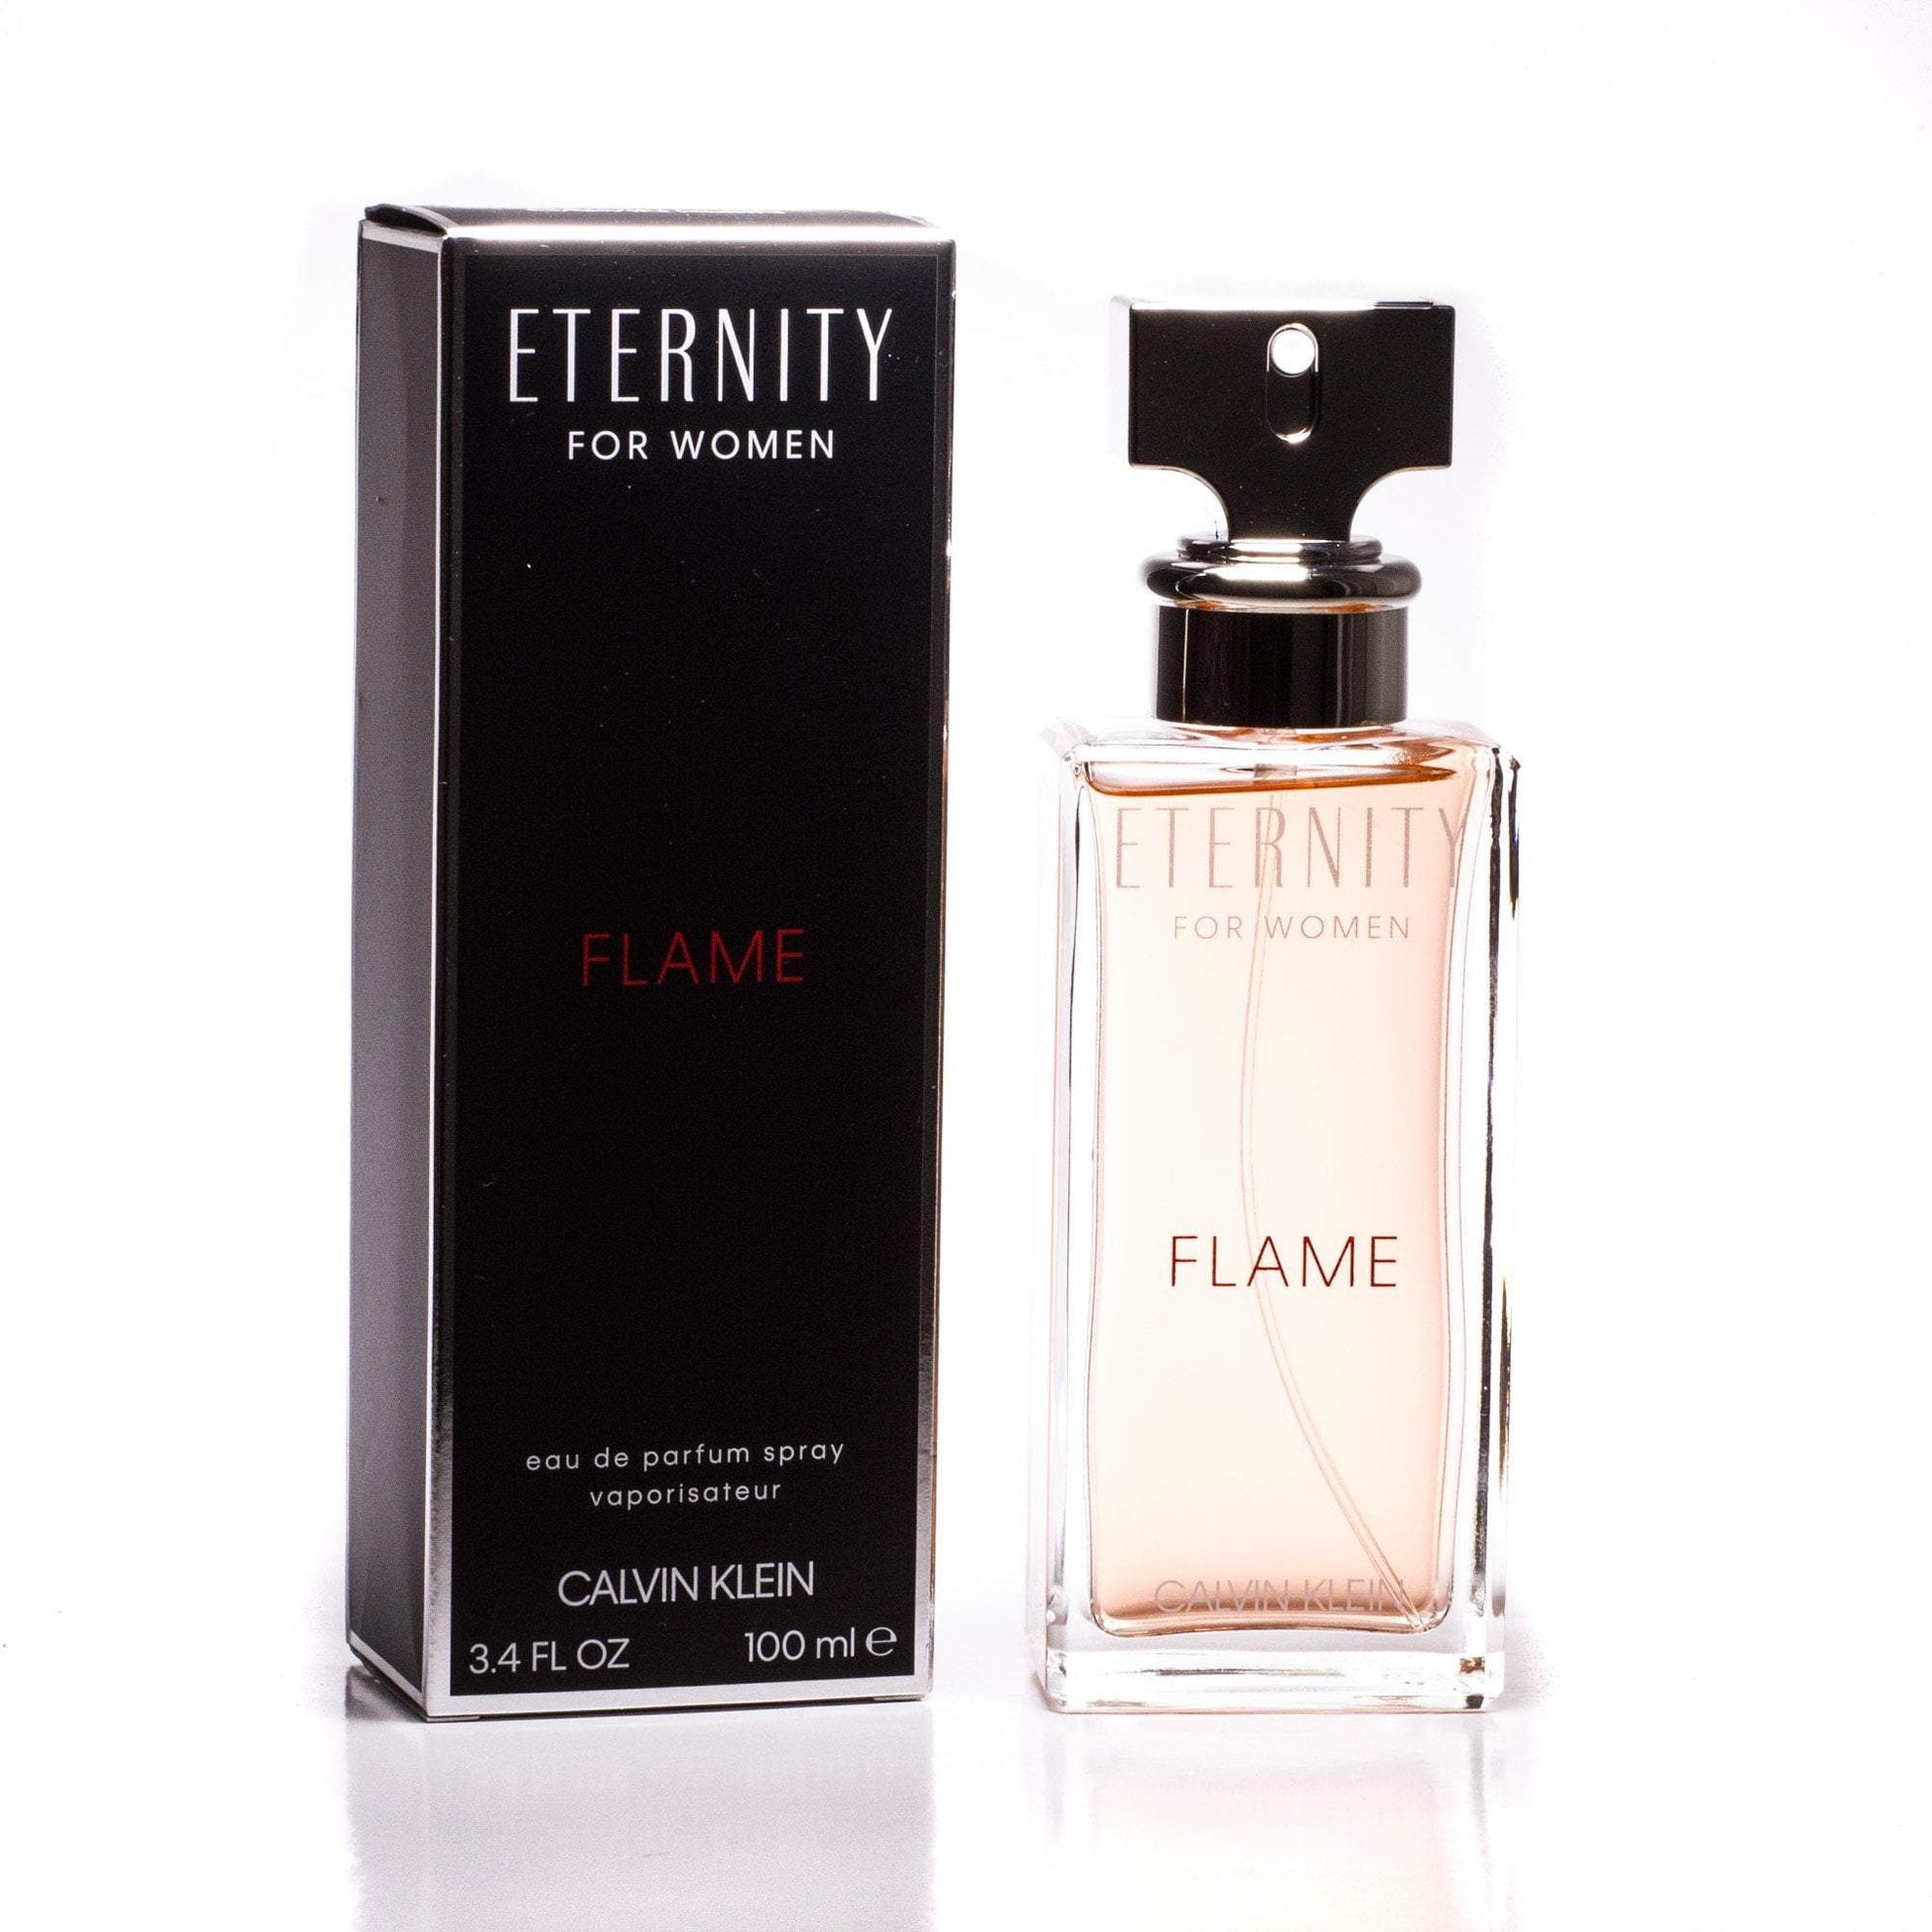 Eternity Flame Eau de Parfum Spray for Women by Calvin Klein, Product image 1